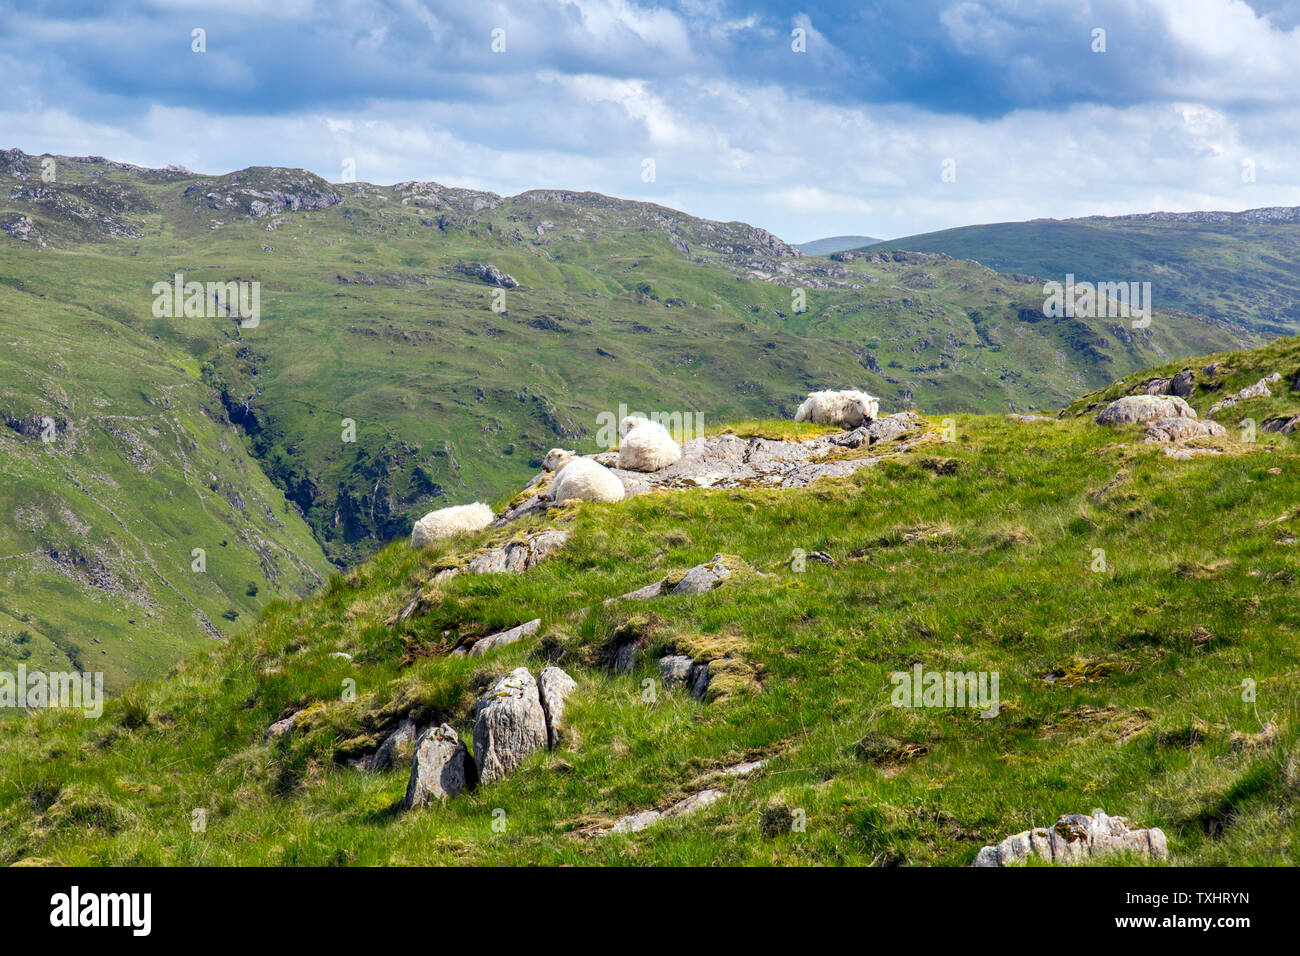 Ovejas de las montañas de Gales descansando en thr sol sobre rocas calientes junto a los mineros vía, el Parque Nacional de Snowdonia, Gwynedd, Gales, Reino Unido Foto de stock